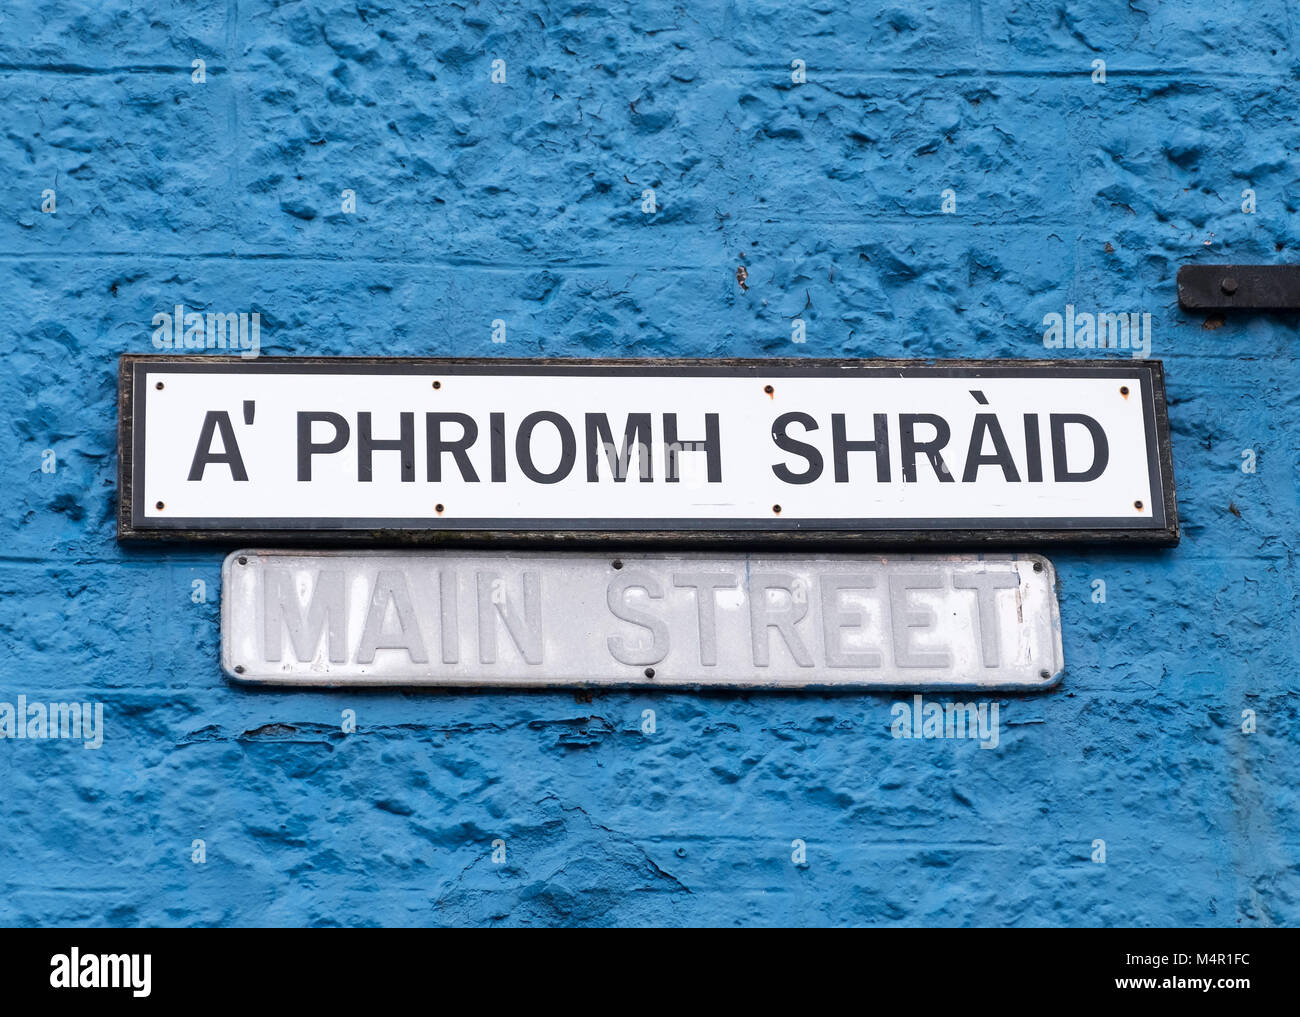 Main Street (ein "Phriomh Shraid) Zeichen in Tobermory, Isle of Mull Argyle & Bute, Inneren Hebriden in Schottland. Stockfoto